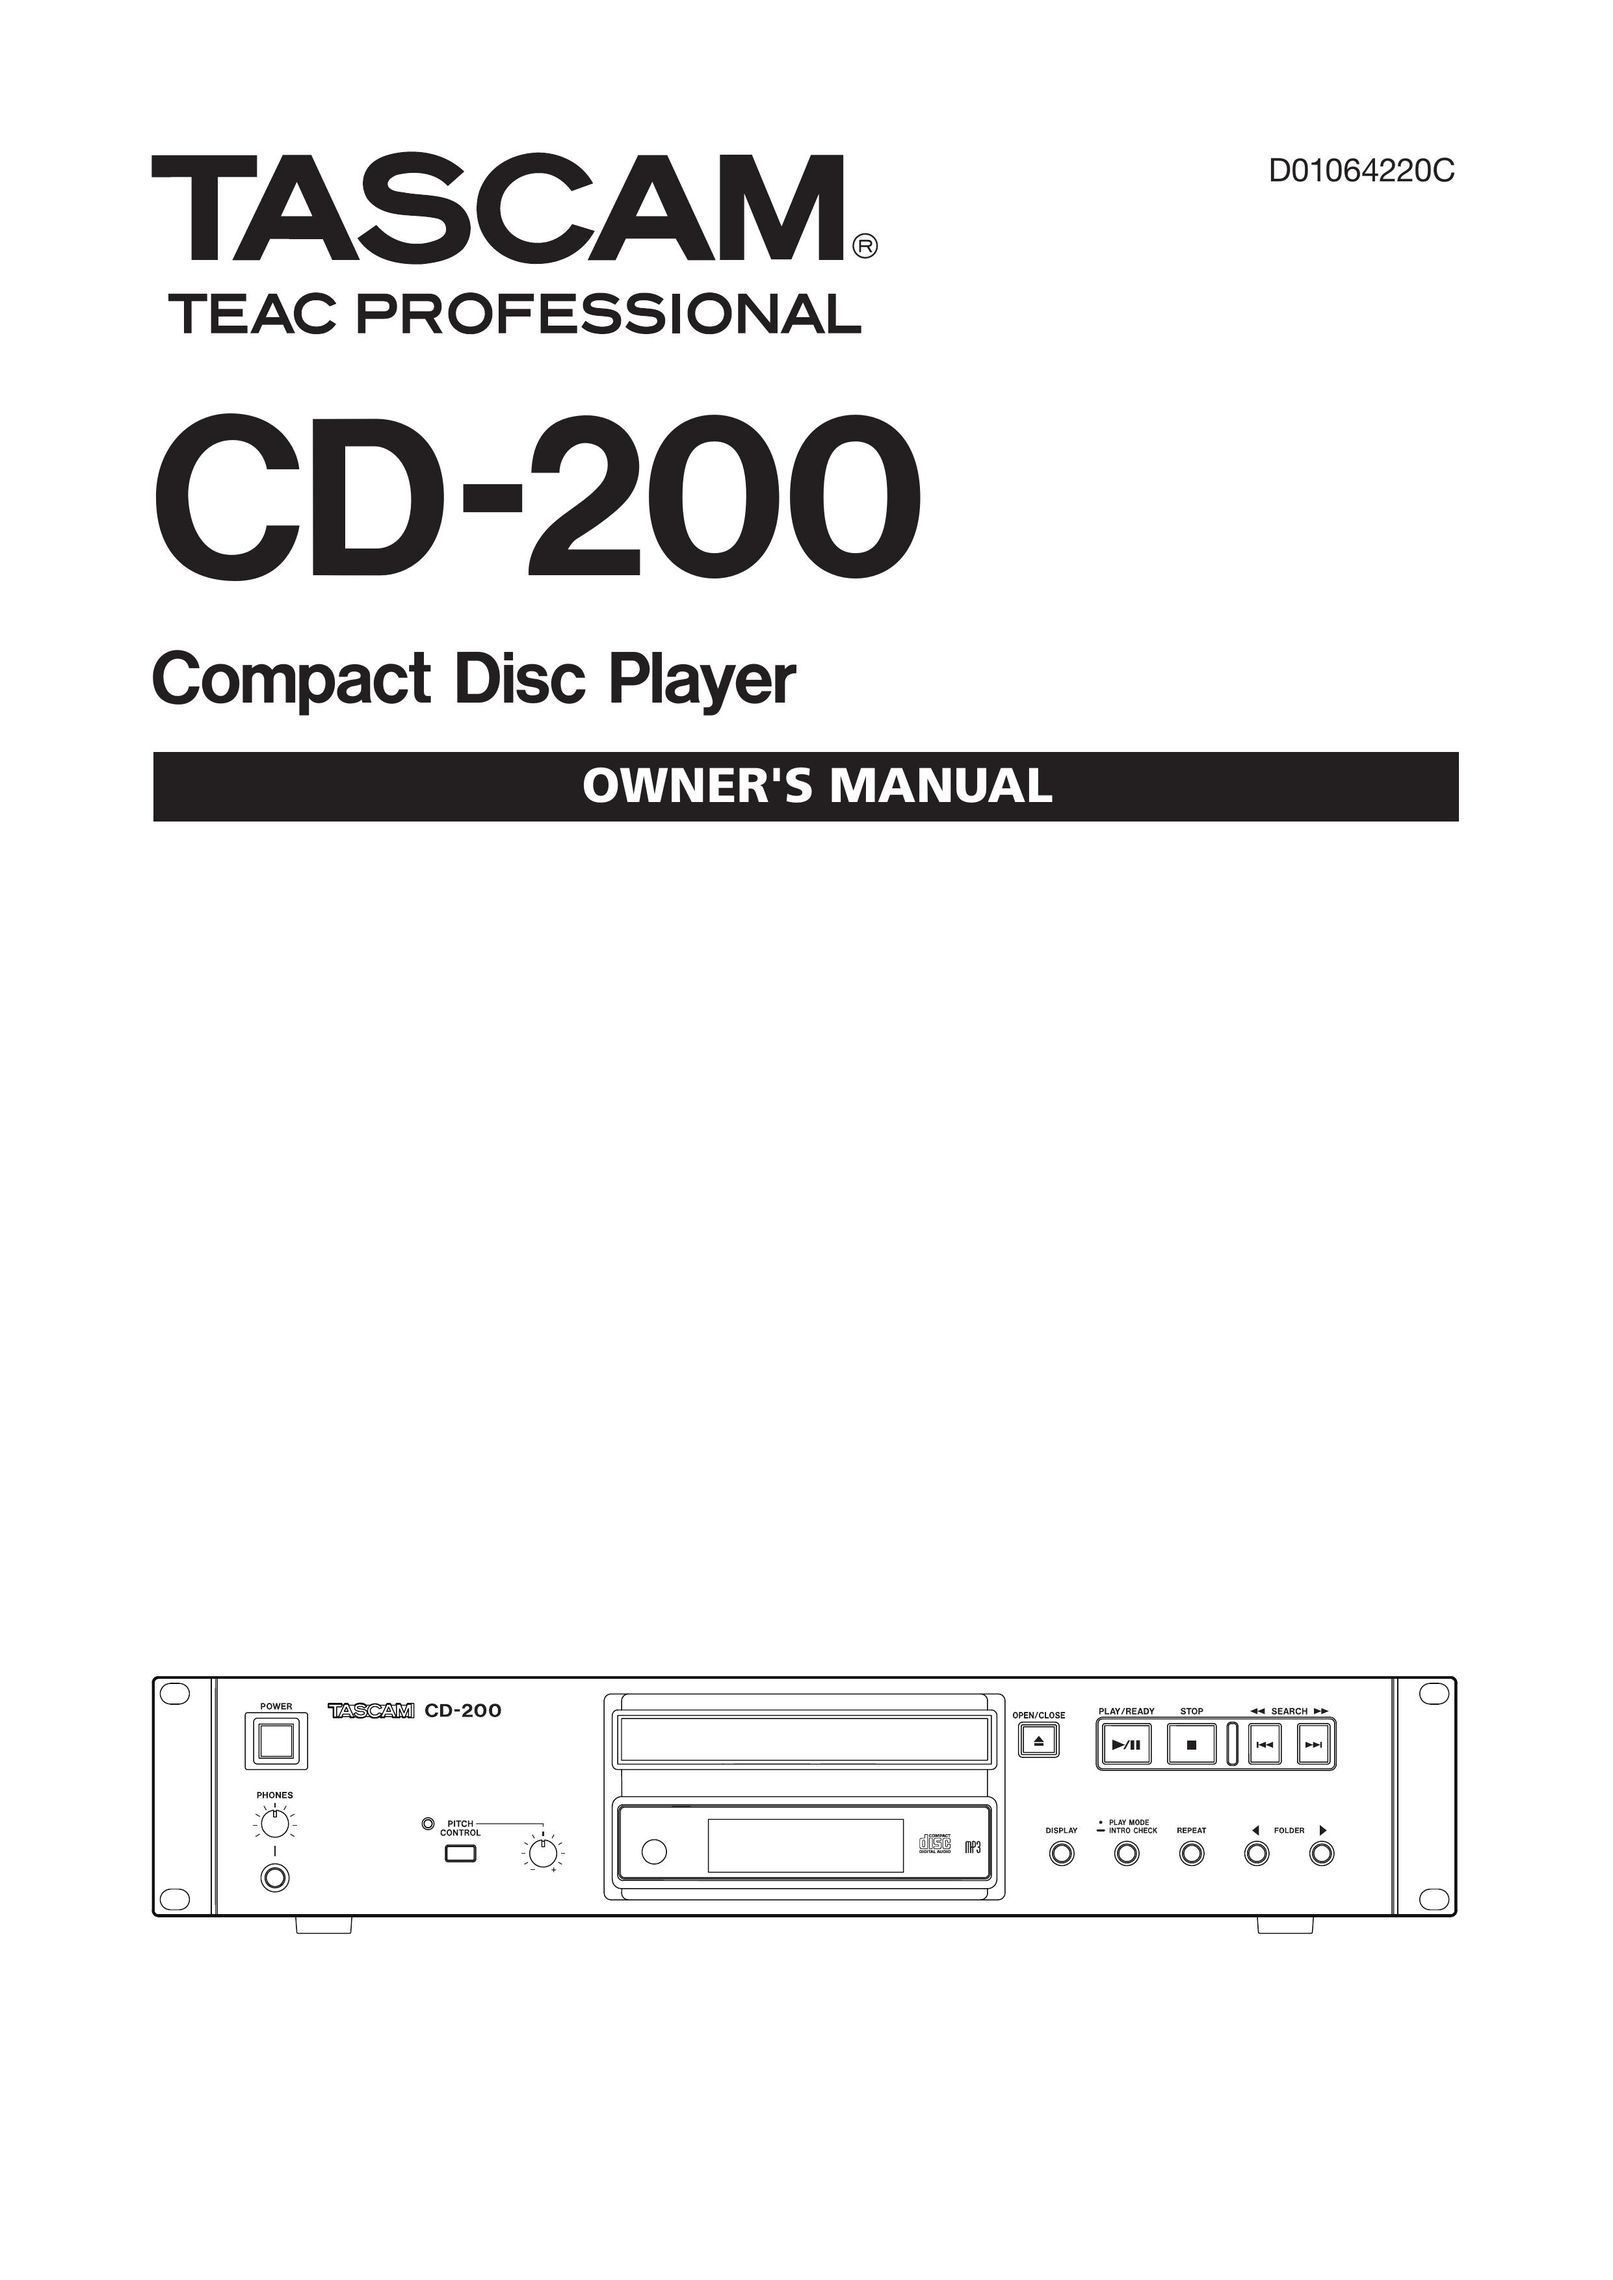 Tascam D01064220C CD Player User Manual